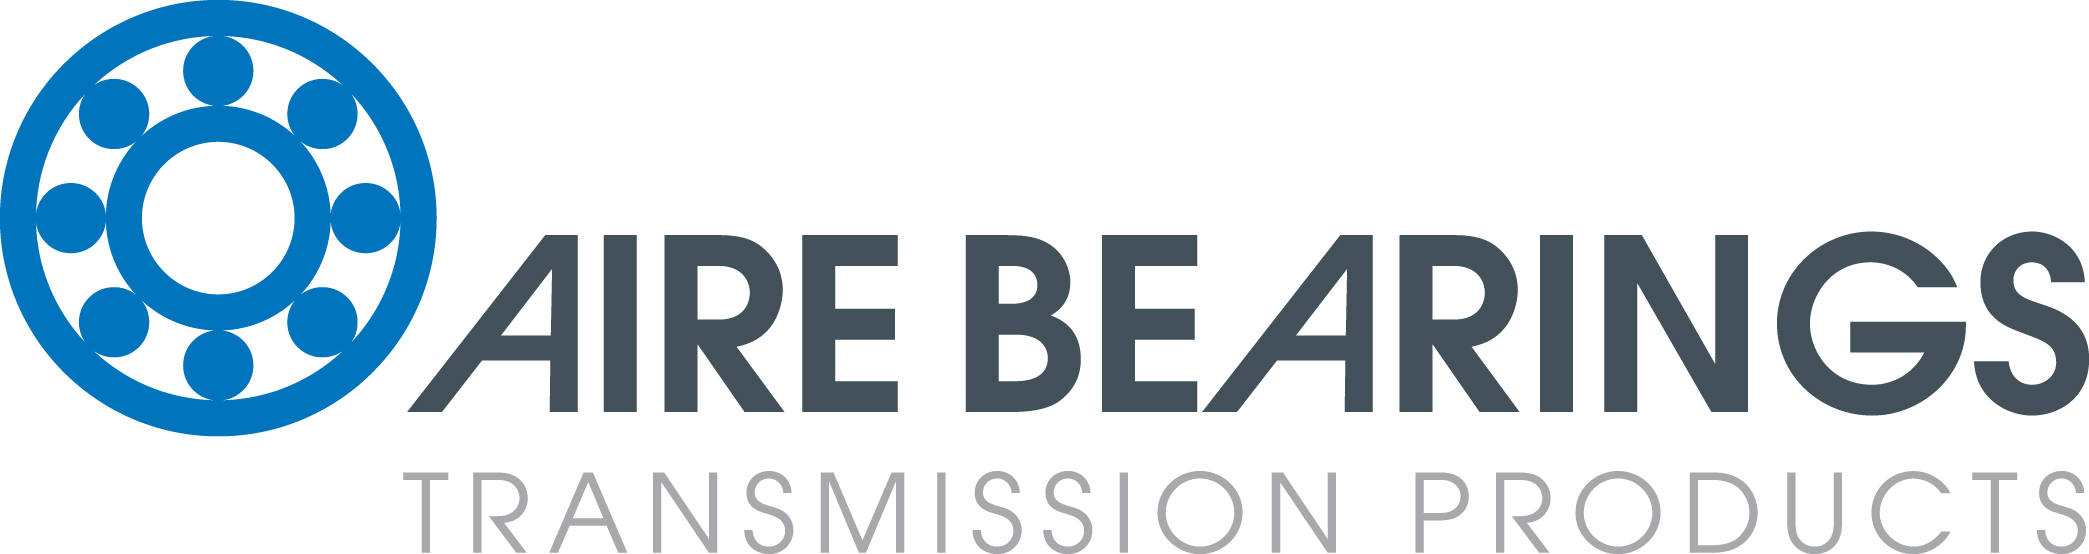 Aire Bearings Ltd